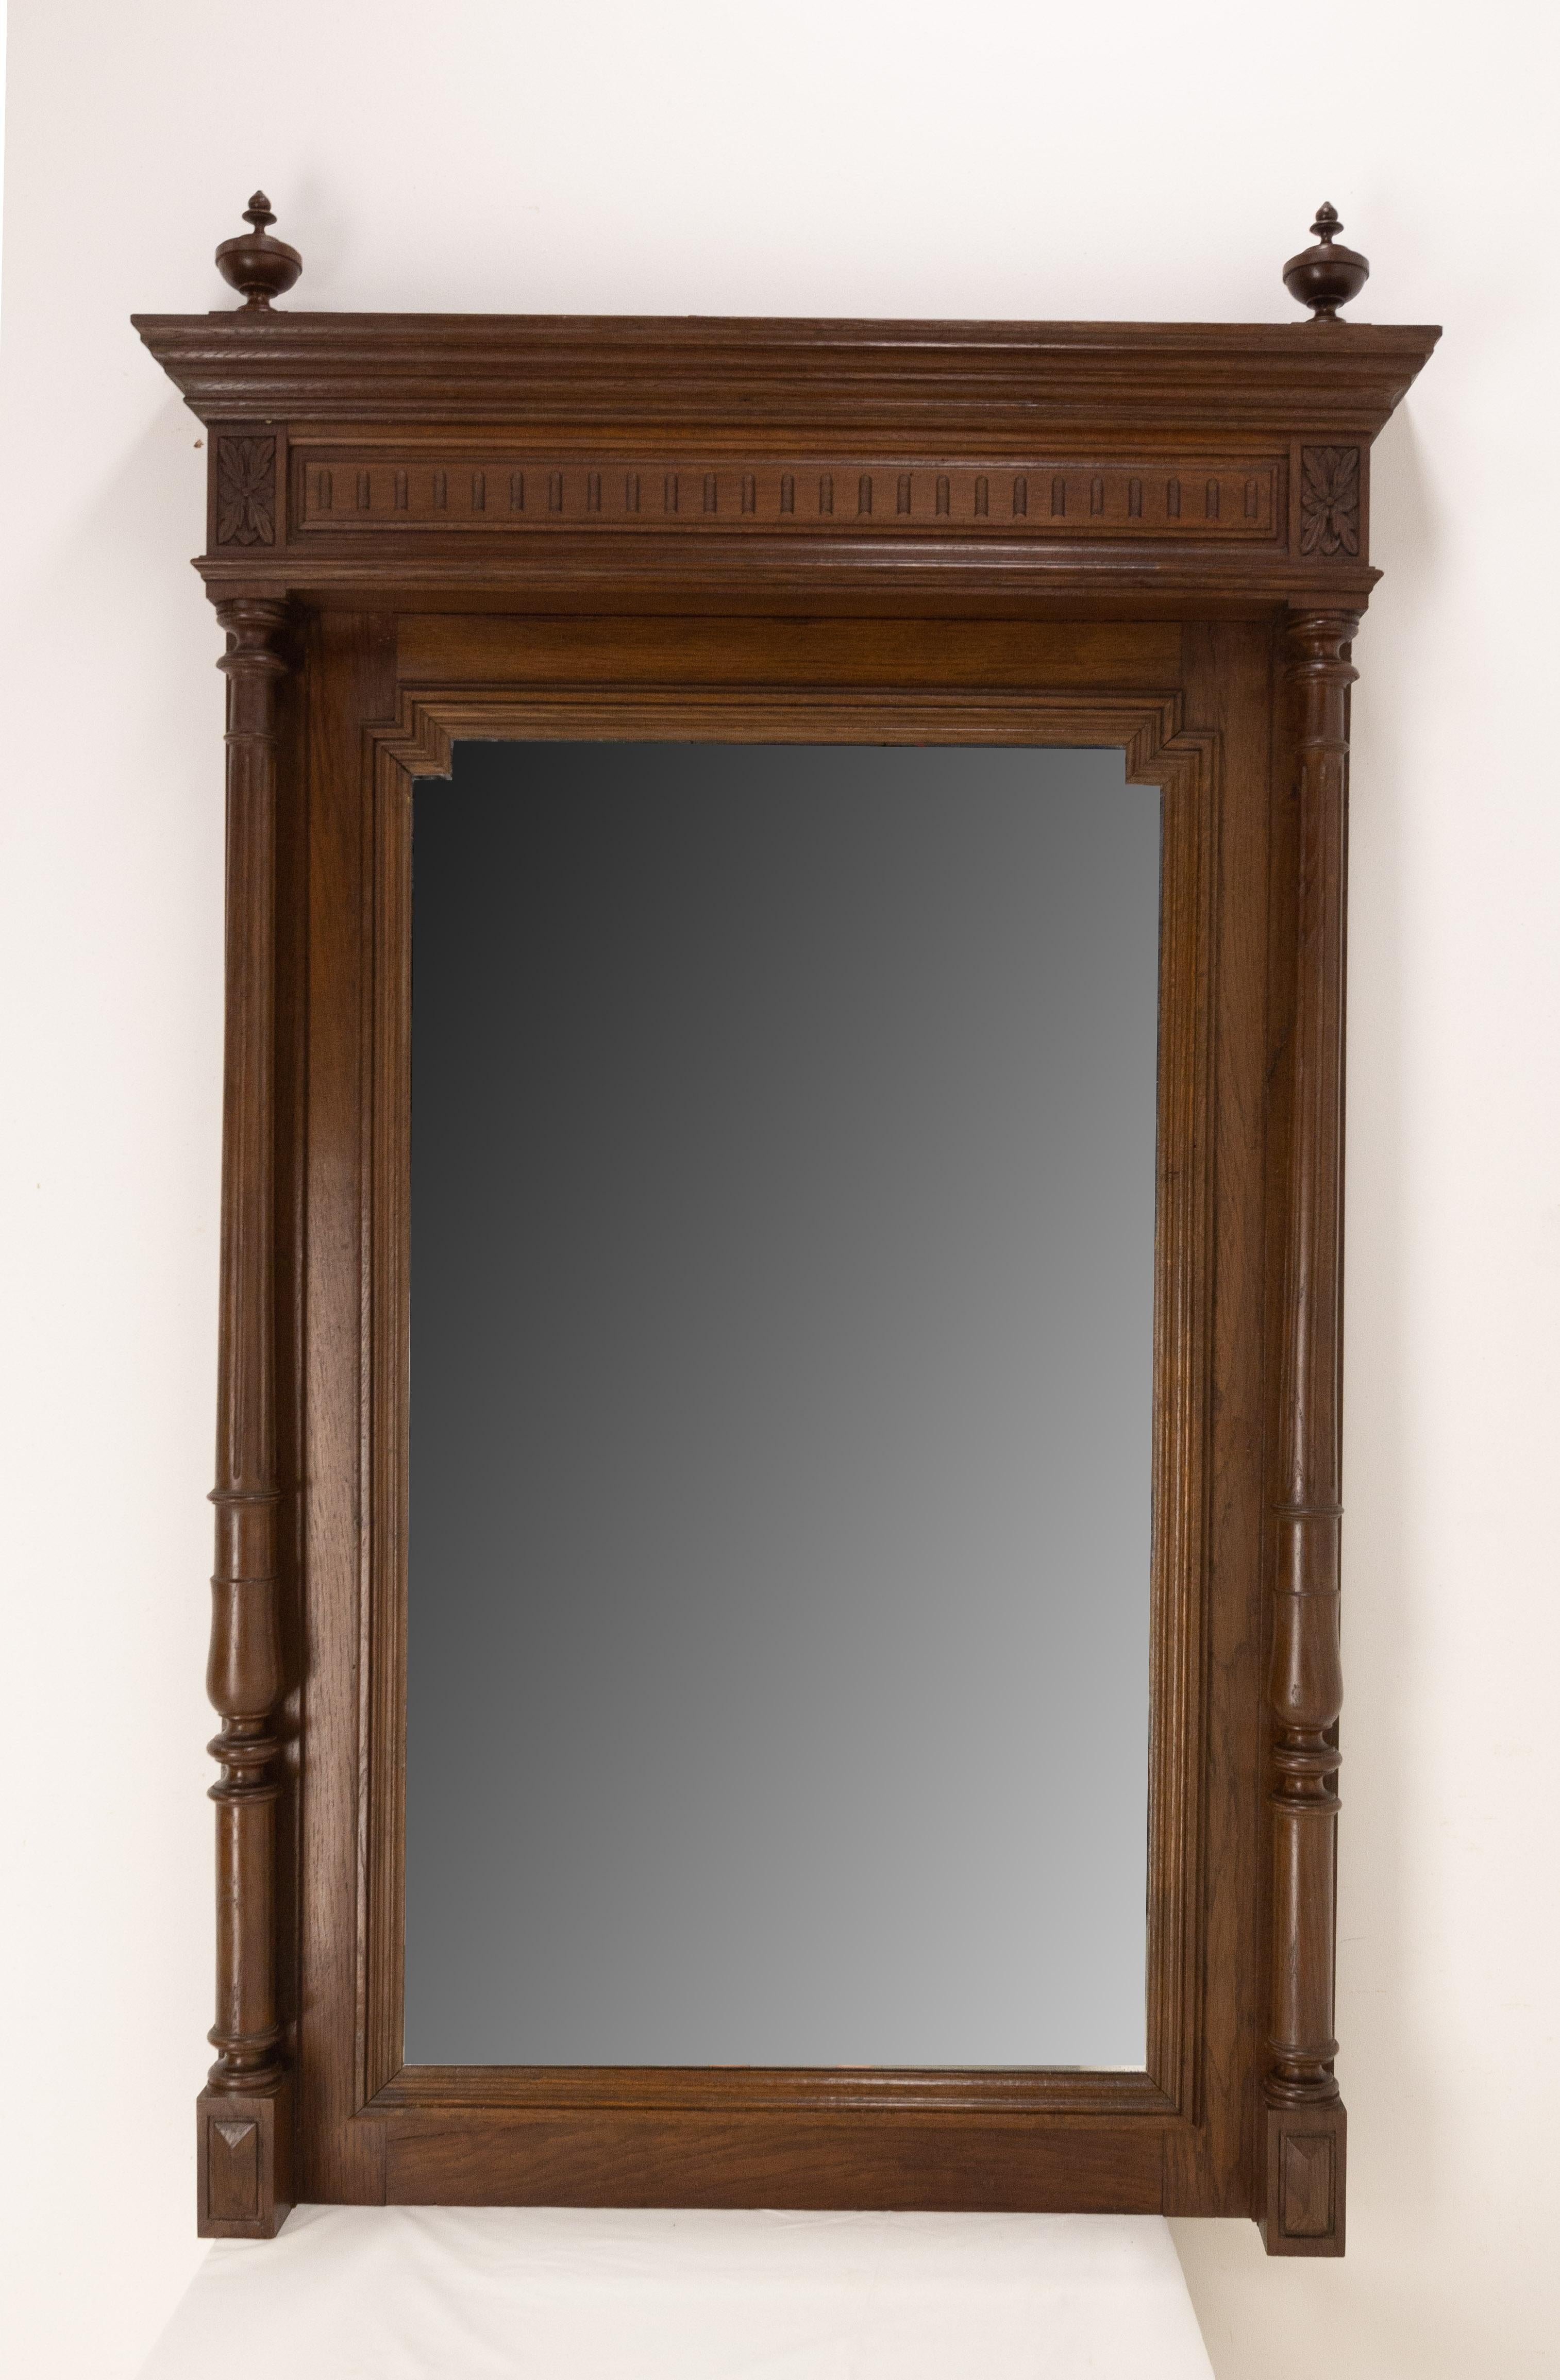 Französischer Spiegel aus dem späten 19. Jahrhundert mit Eichenrahmen.
Kleine Säulen umrahmen den Spiegel im Stil Louis XVI
Abgeschrägter Spiegel.
Gute Möbel für den Eingangsbereich oder für ein geräumiges Zimmer.
Guter antiker Zustand, solide